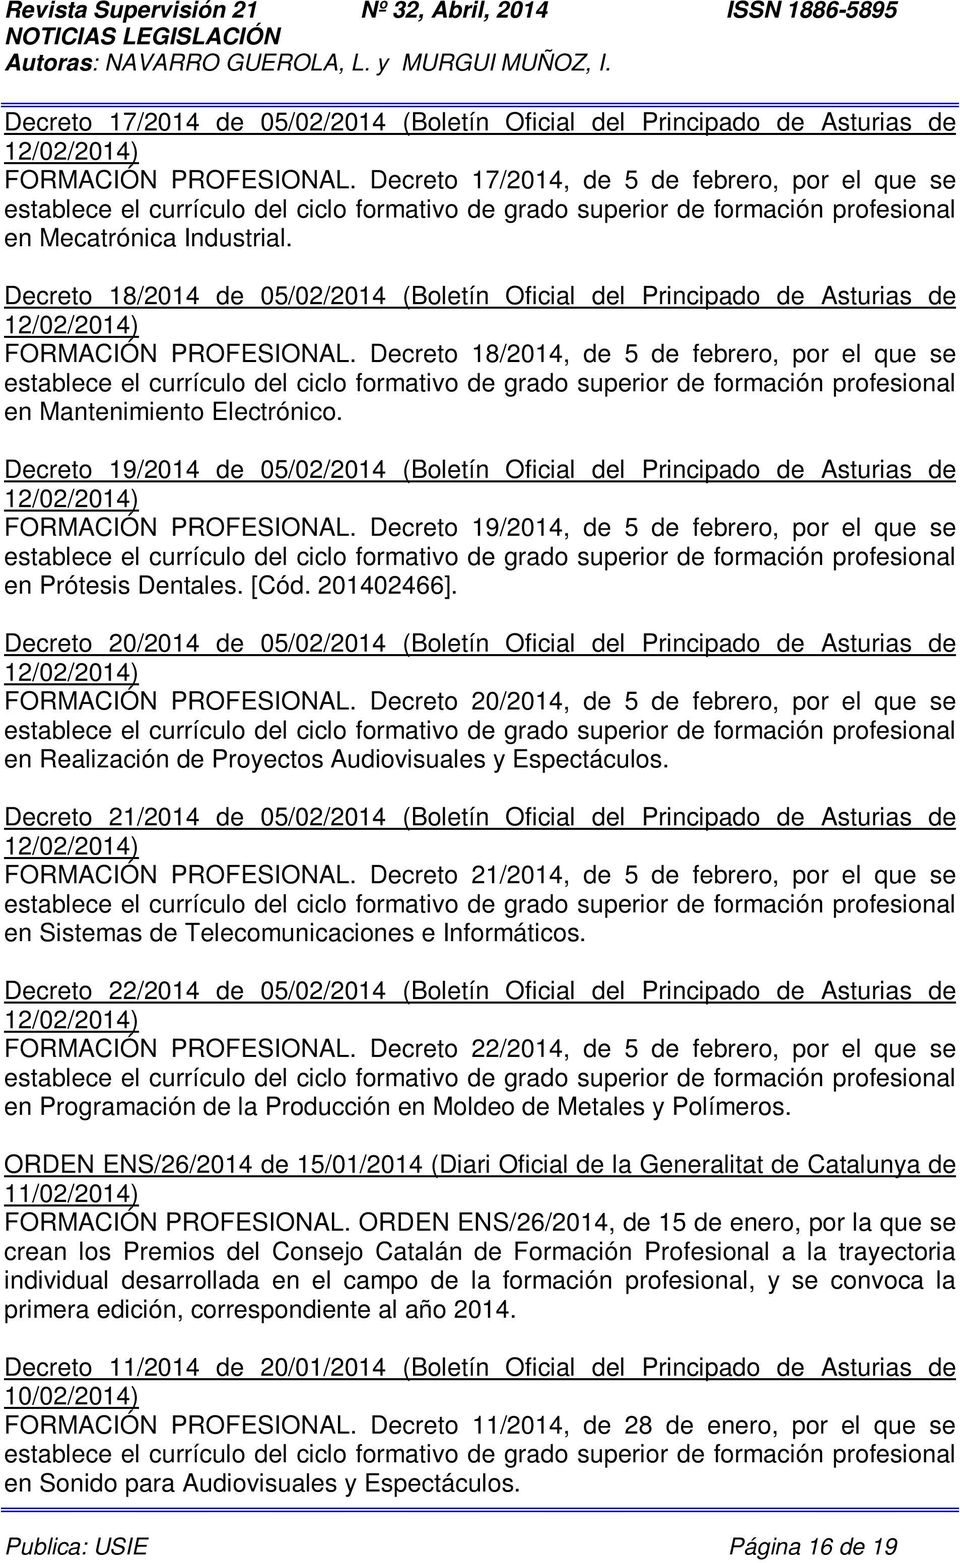 Decreto 19/2014 de 05/02/2014 (Boletín Oficial del Principado de Asturias de 12/02/2014) FORMACIÓN PROFESIONAL. Decreto 19/2014, de 5 de febrero, por el que se en Prótesis Dentales. [Cód. 201402466].